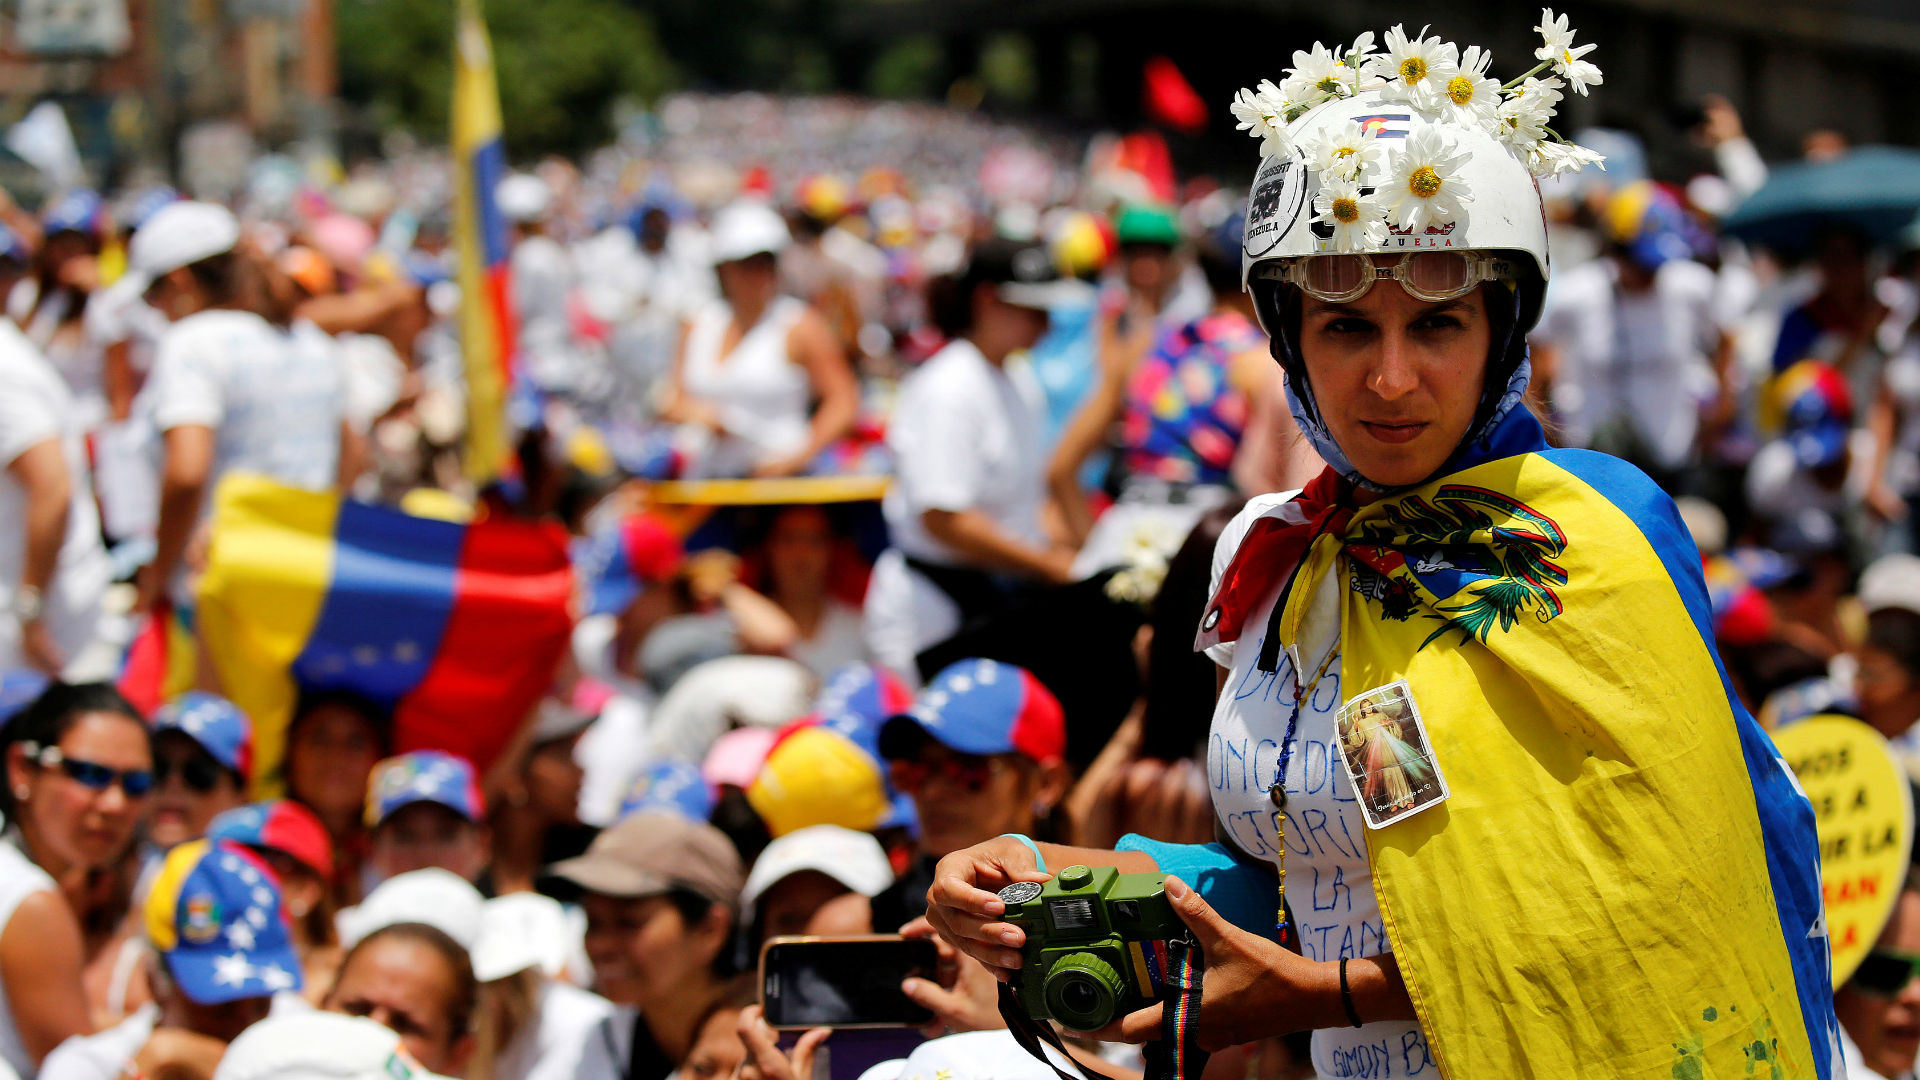 Las mujeres marchan contra la "represión" y "por la paz" en Venezuela